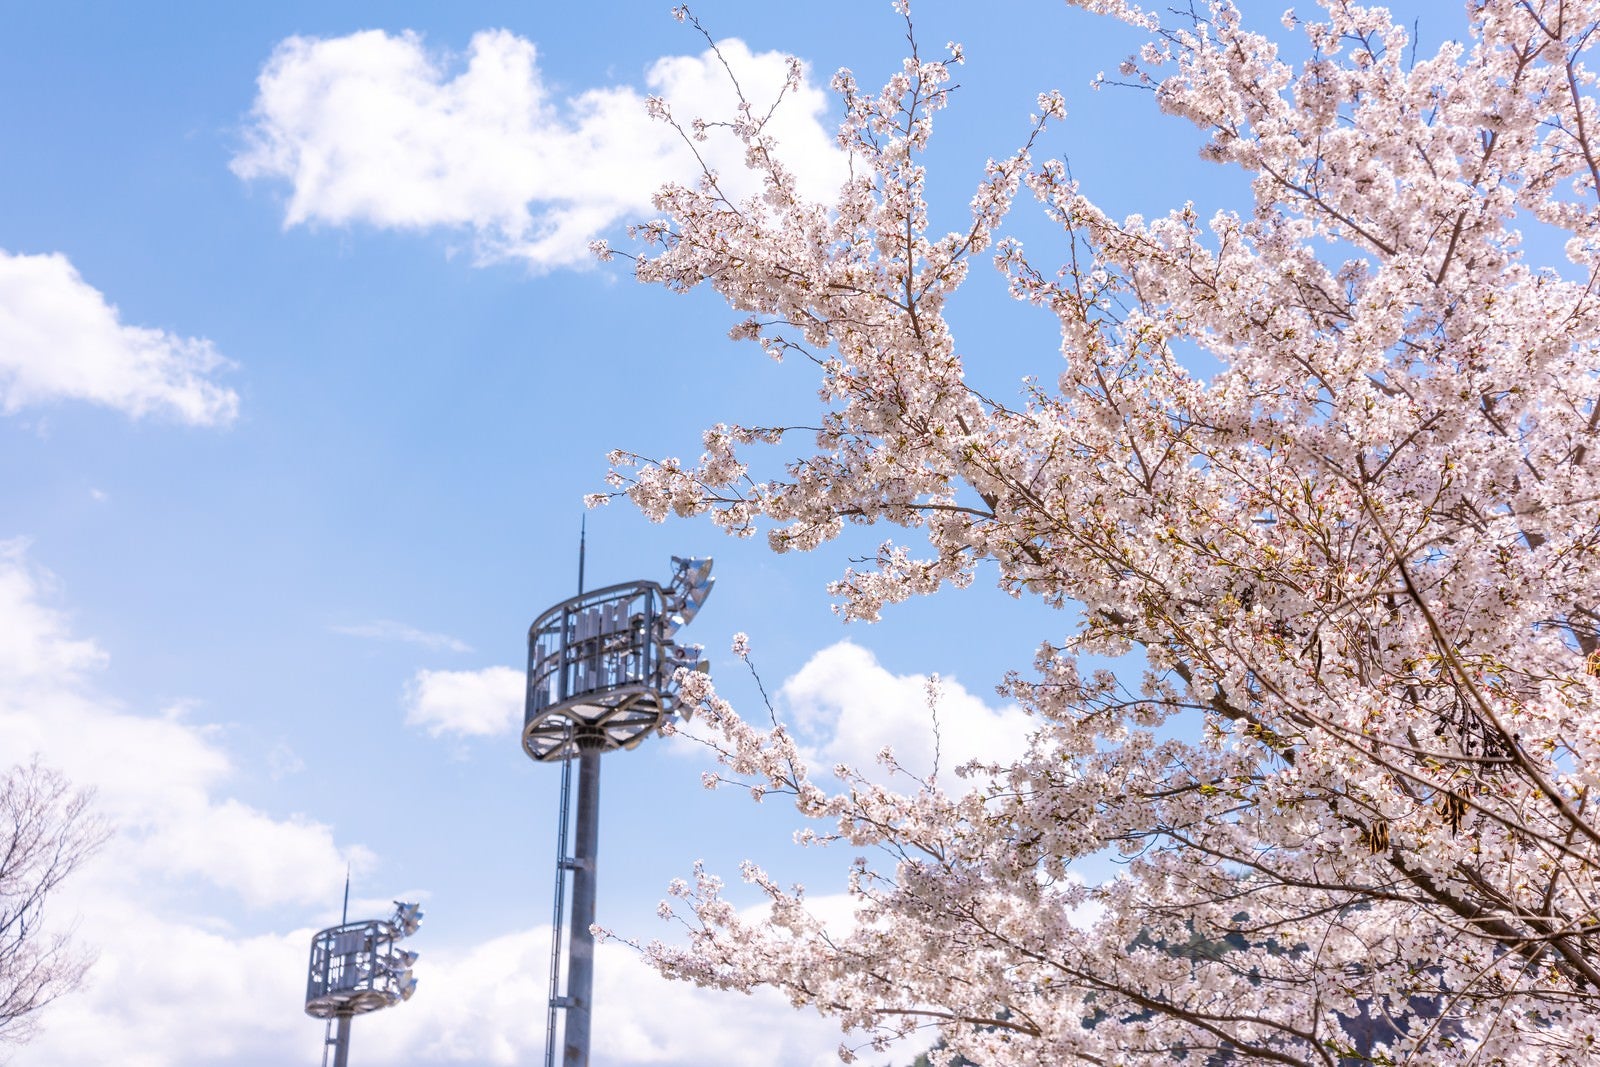 「武石グラウンドの照明設備と満開の桜」の写真